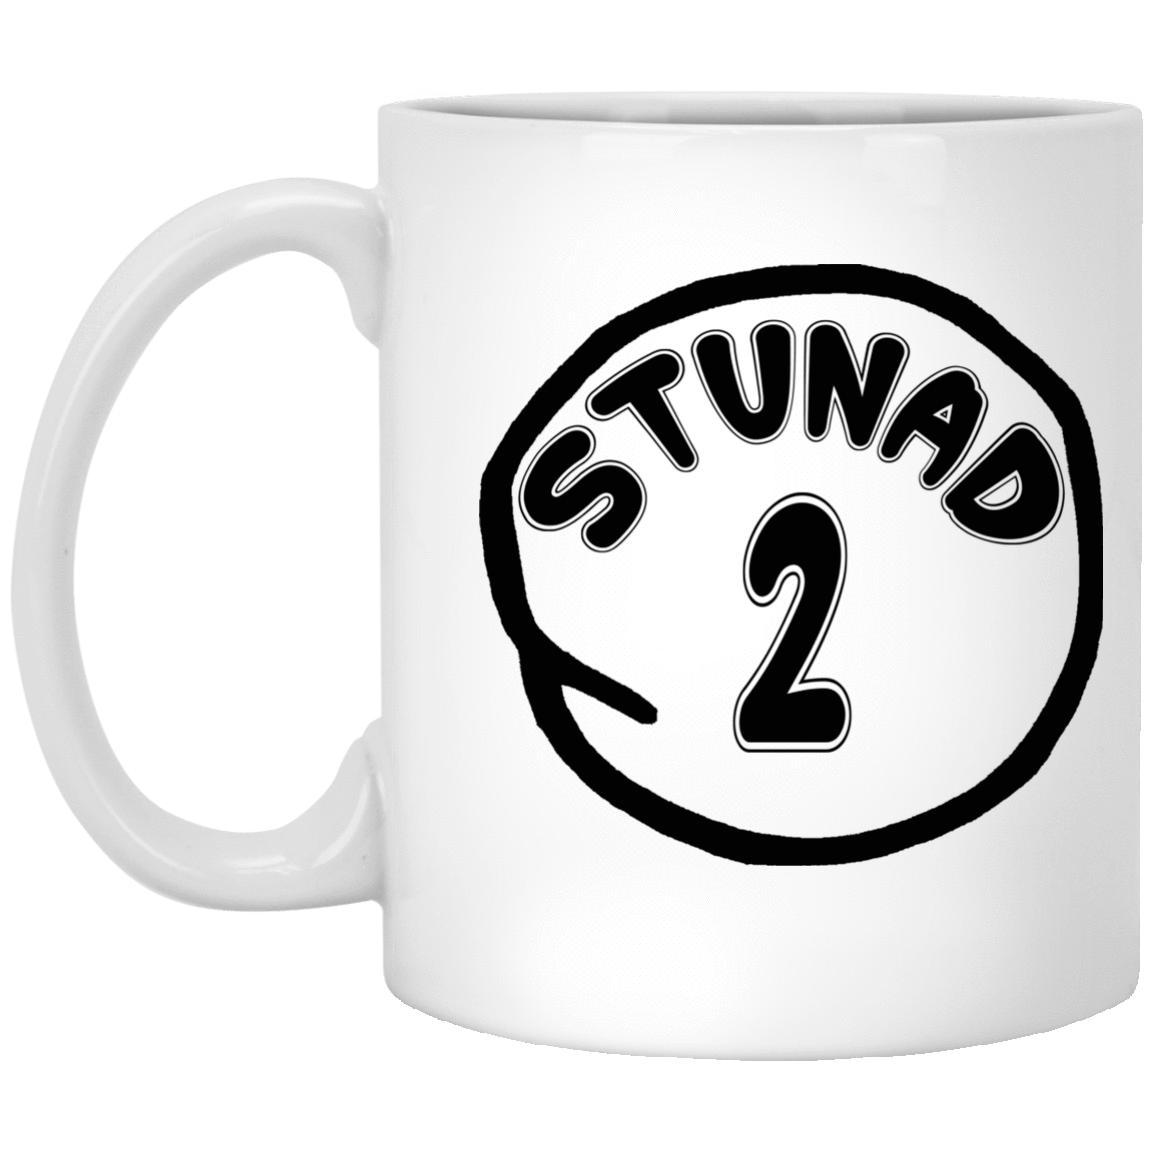 Stunad 2 Mugs